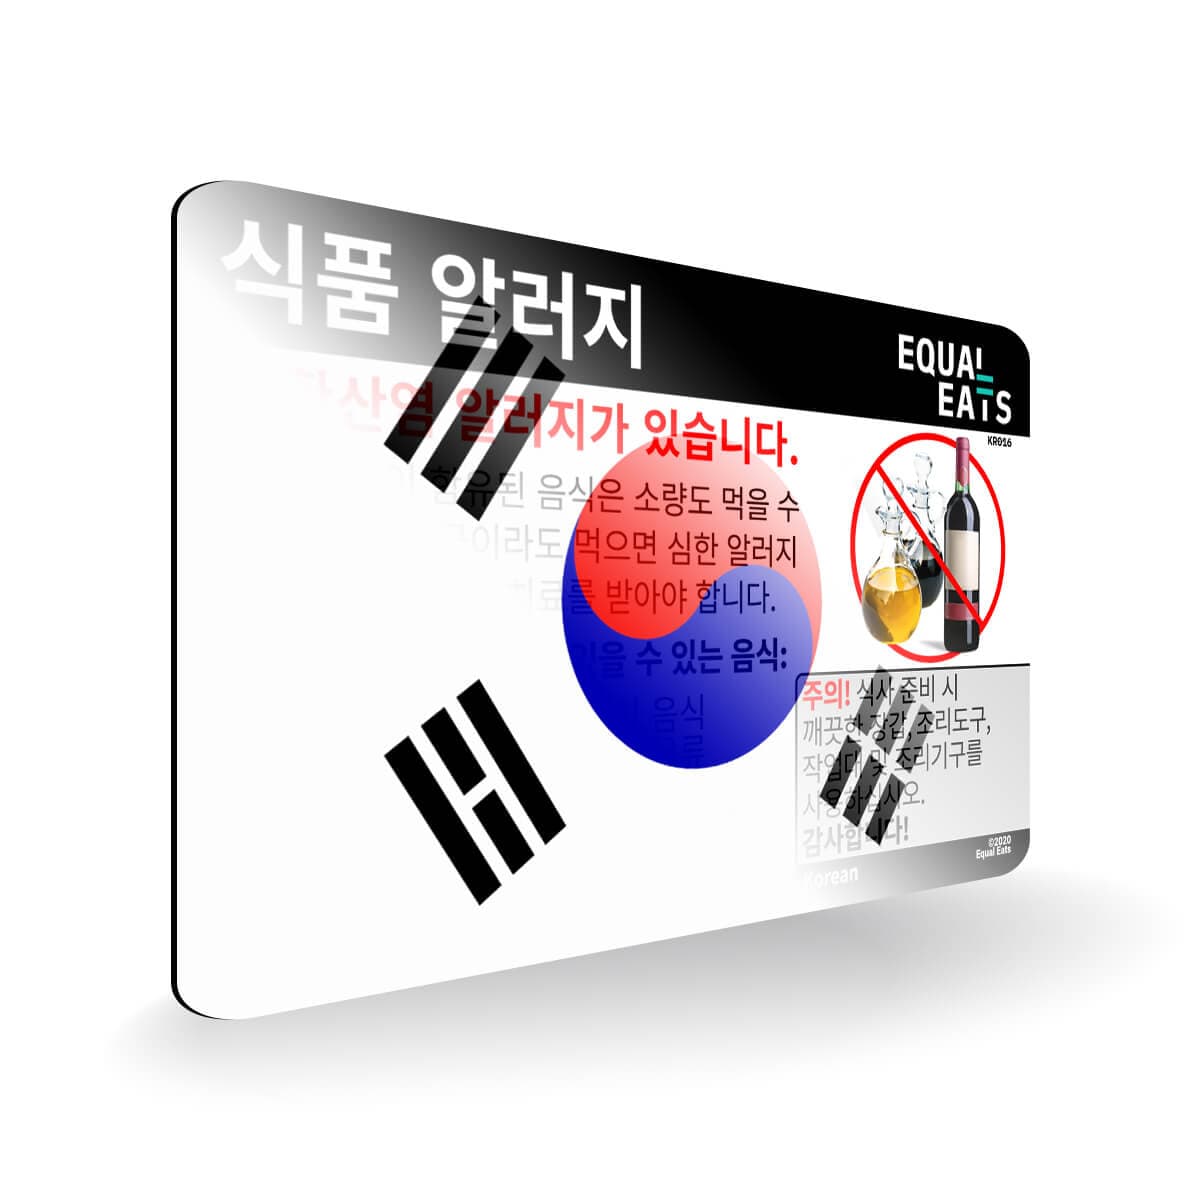 Sulfite Allergy in Korean. Sulfite Allergy Card for Korea